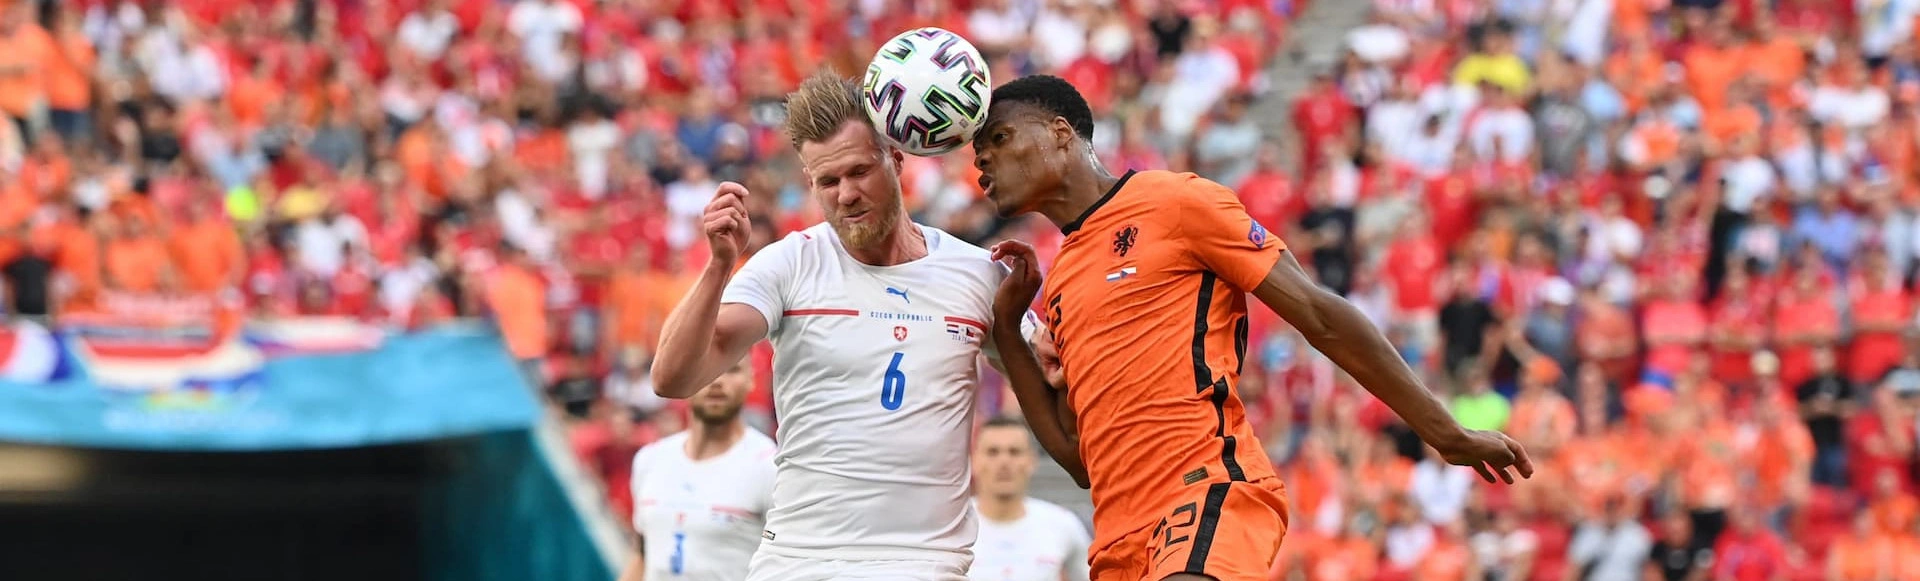 Нидерланды проиграли сборной Чехии и вылетают из плей-оффа Евро-2020